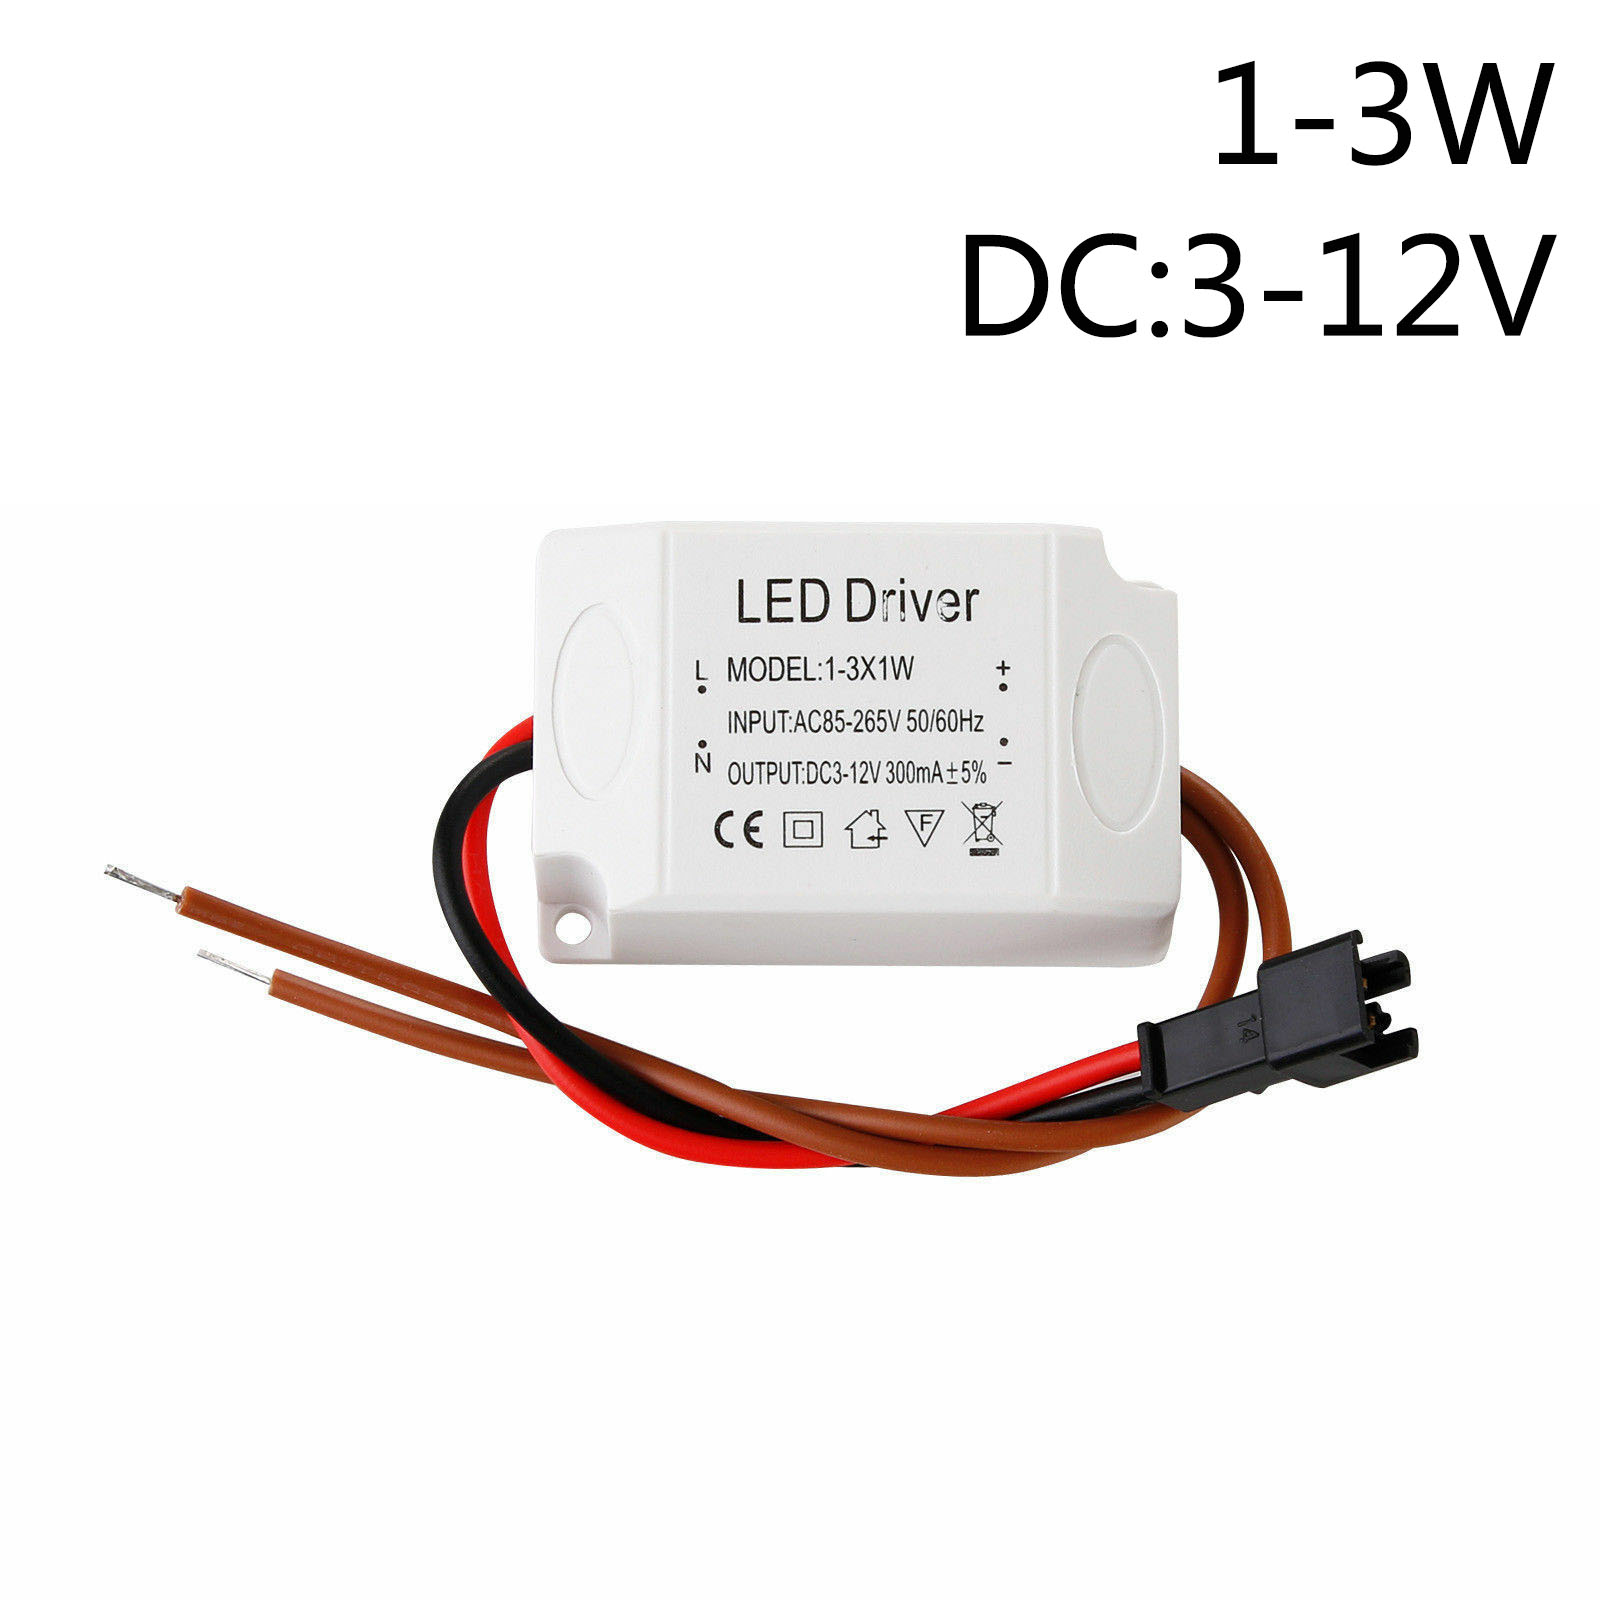 LED Driver 3W 6W 9W 12W 15W 18W 24W 25W 36W LED Power Supply Unit